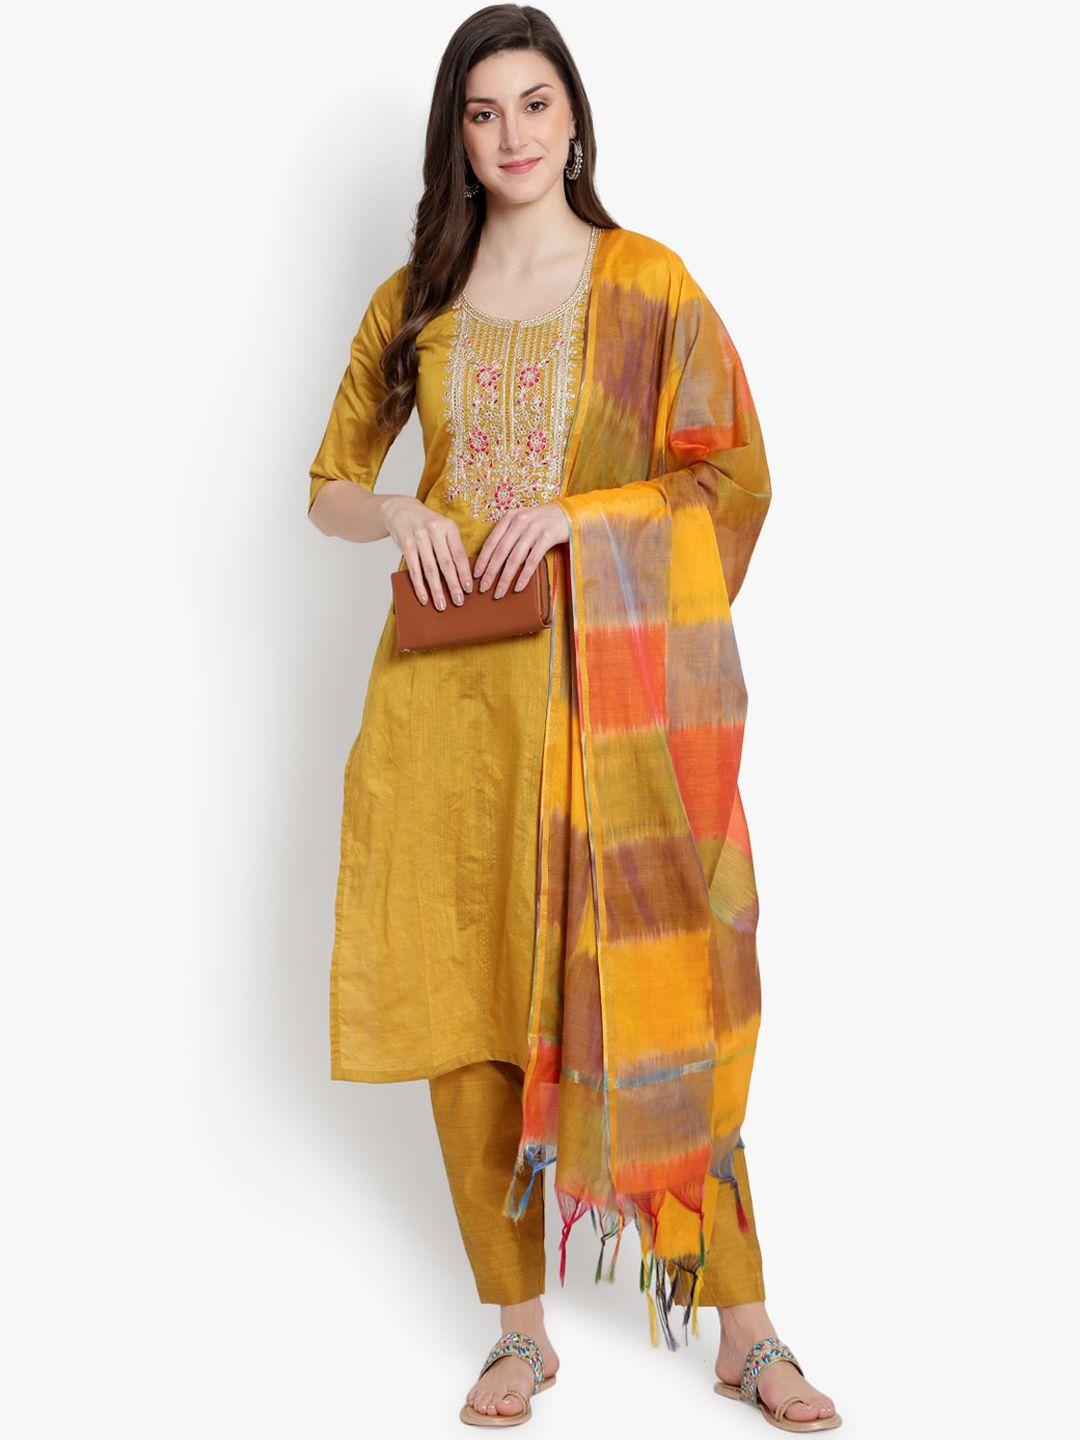 heemara women mustard yellow yoke embroidered sequined kurta with trousers & dupatta